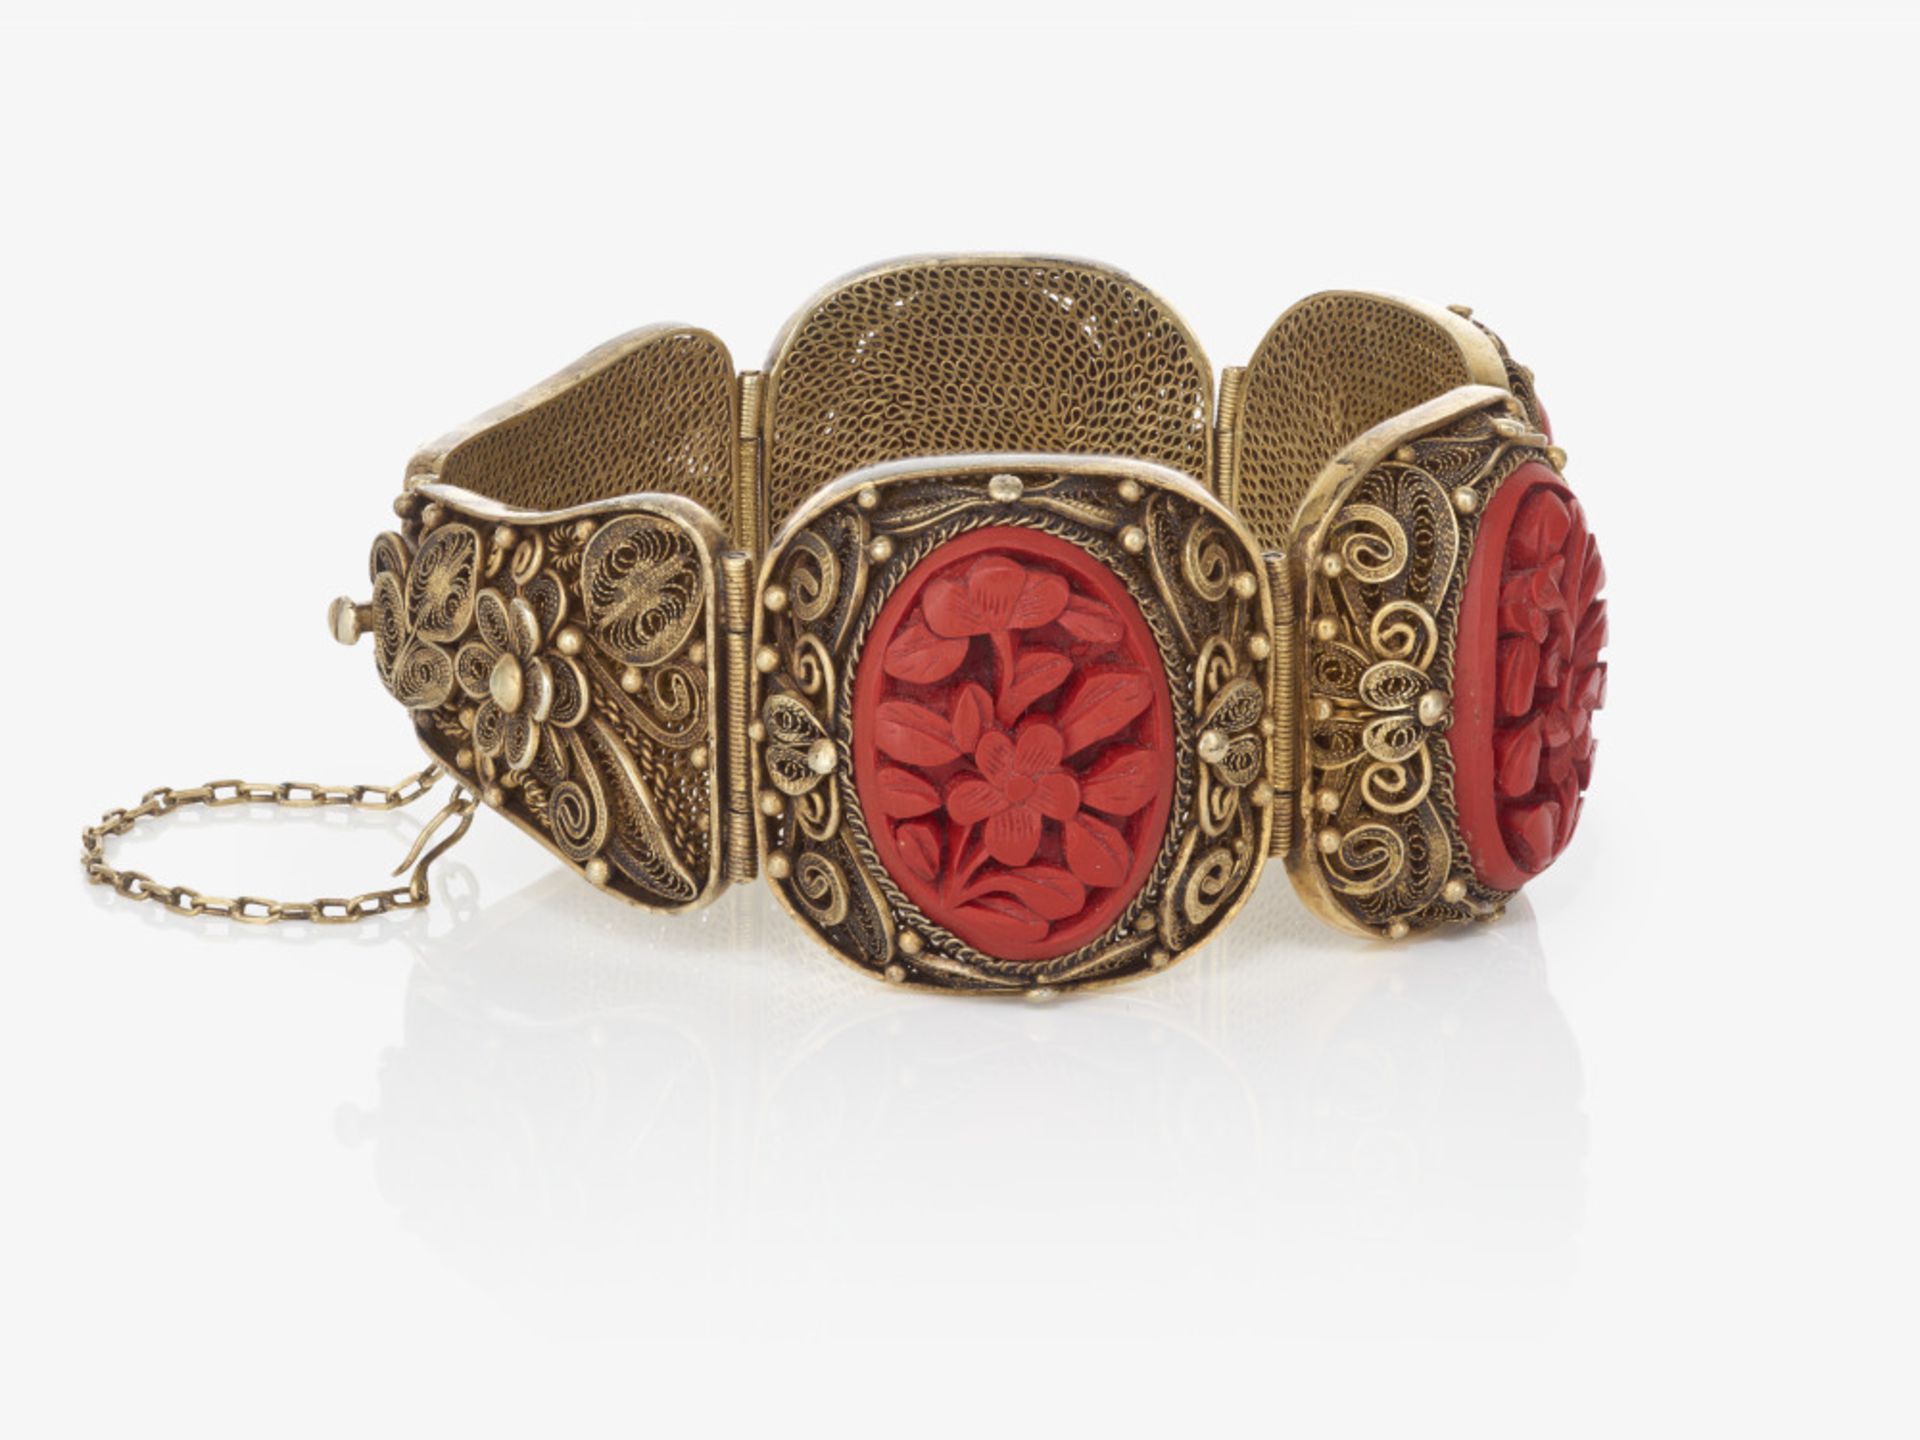 Garnitur mit rotem Urushilack, bestehend aus Kette, Armband, Brosche, Ring, Paar Ohrclips - Bild 5 aus 12